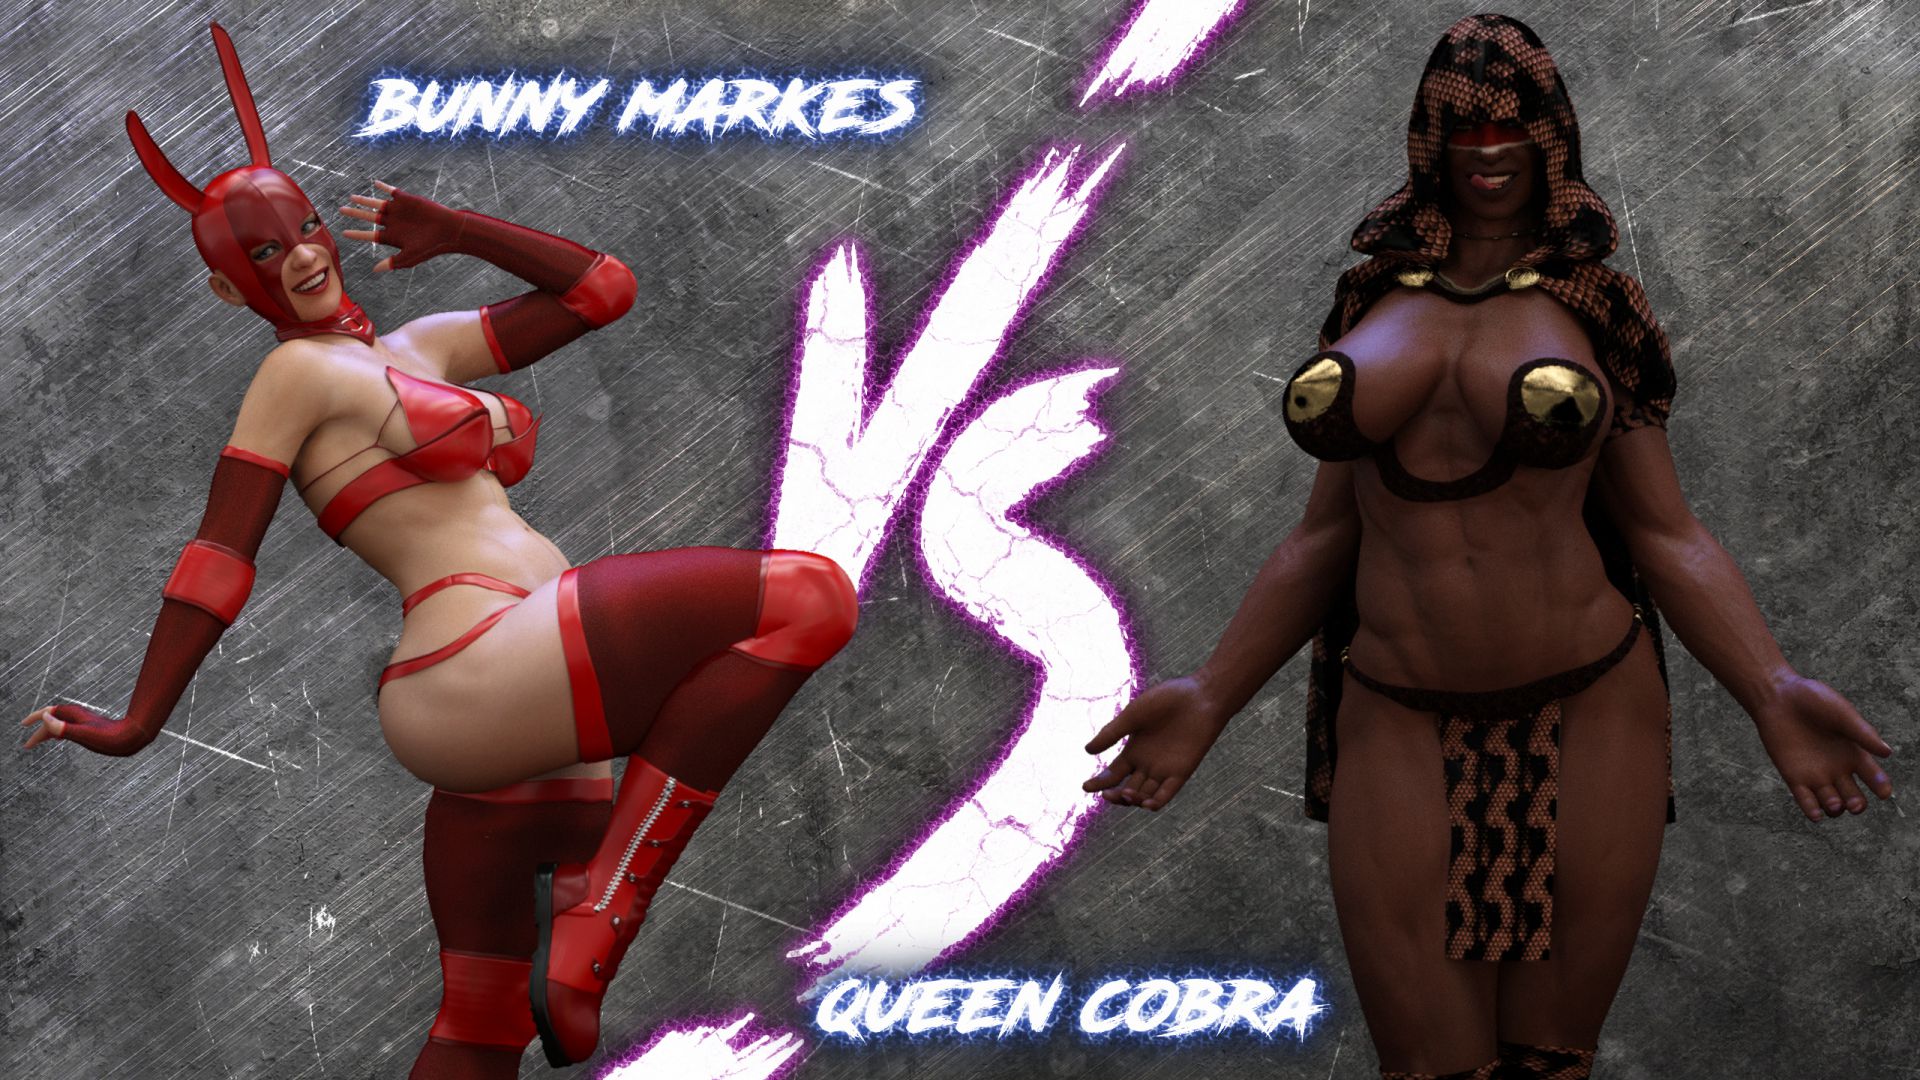 Outside the ring bunny vs queen cobra squarepeg3d porn comics